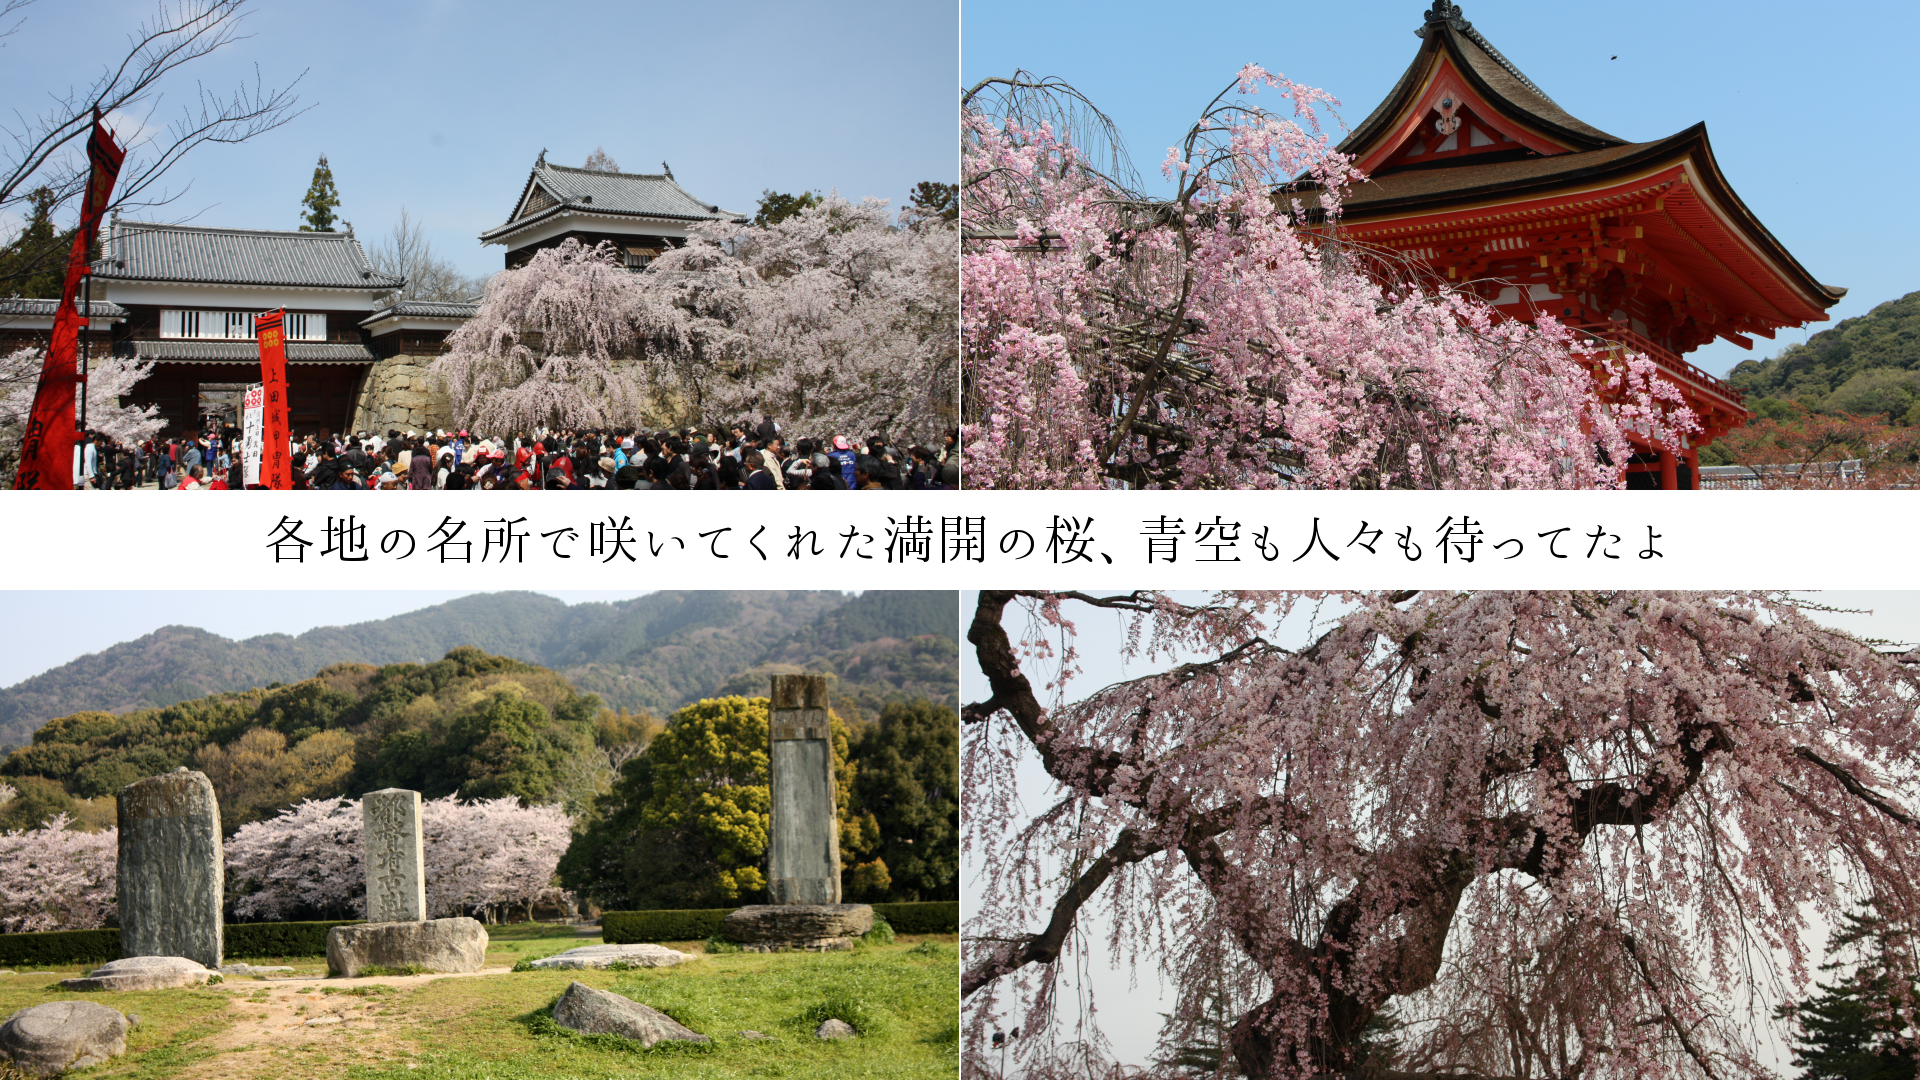 各地の名所で咲いてくれた満開の桜、青空も人々も待ってたよ